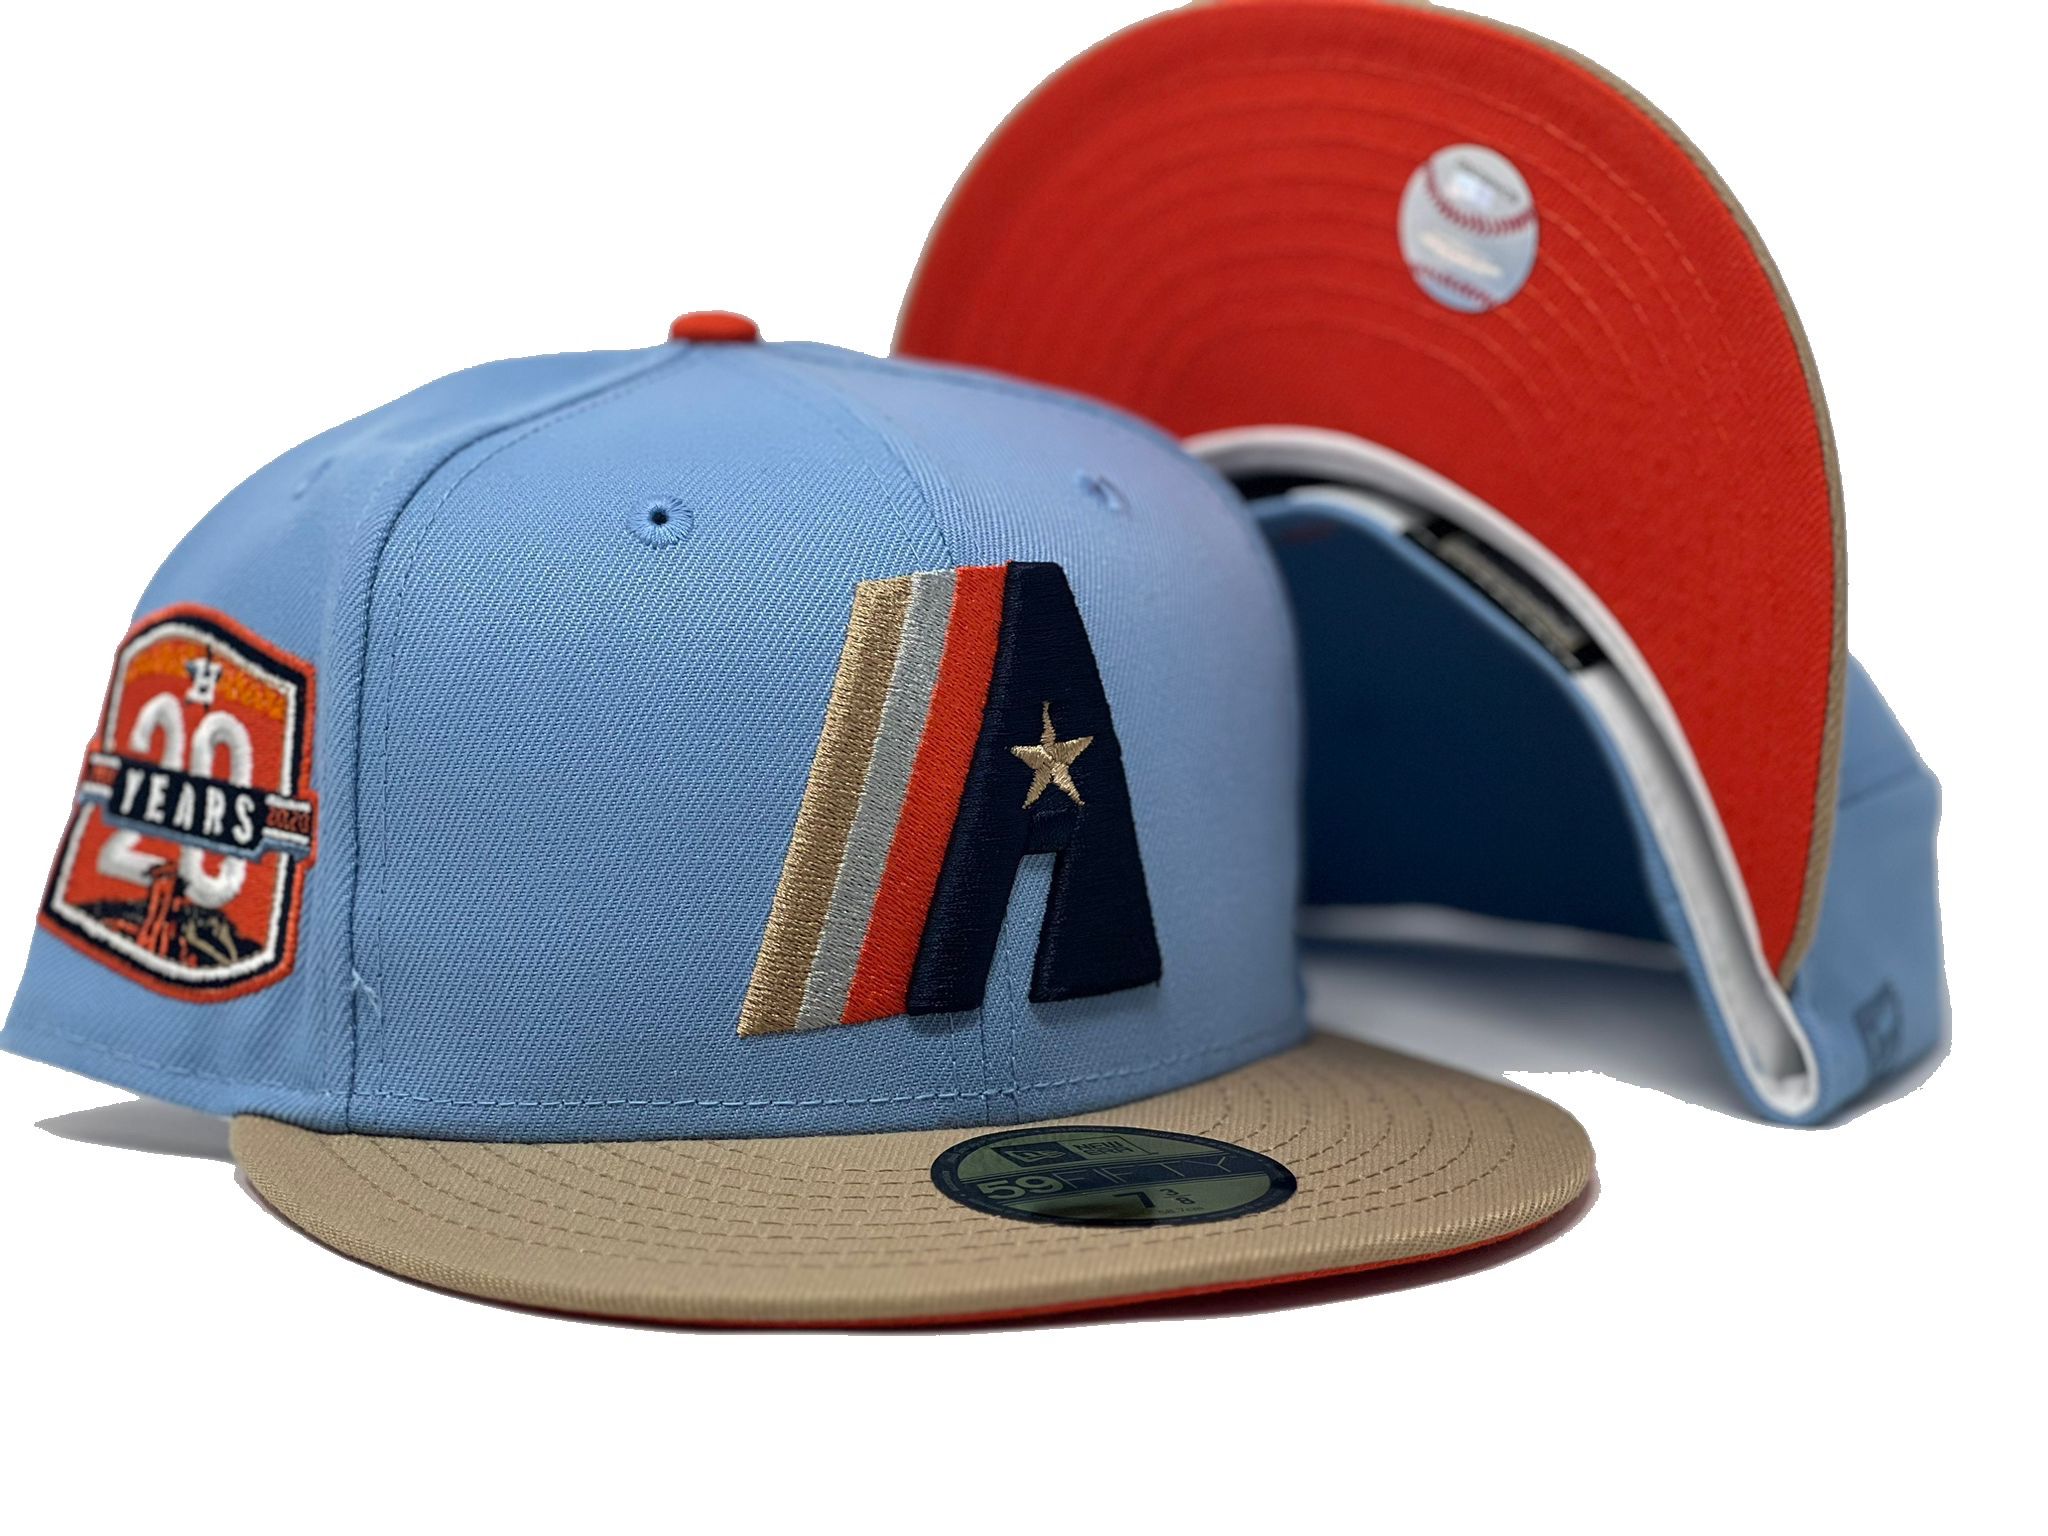 martodesigns - Houston Astros Baseball Blue Orange Glitter